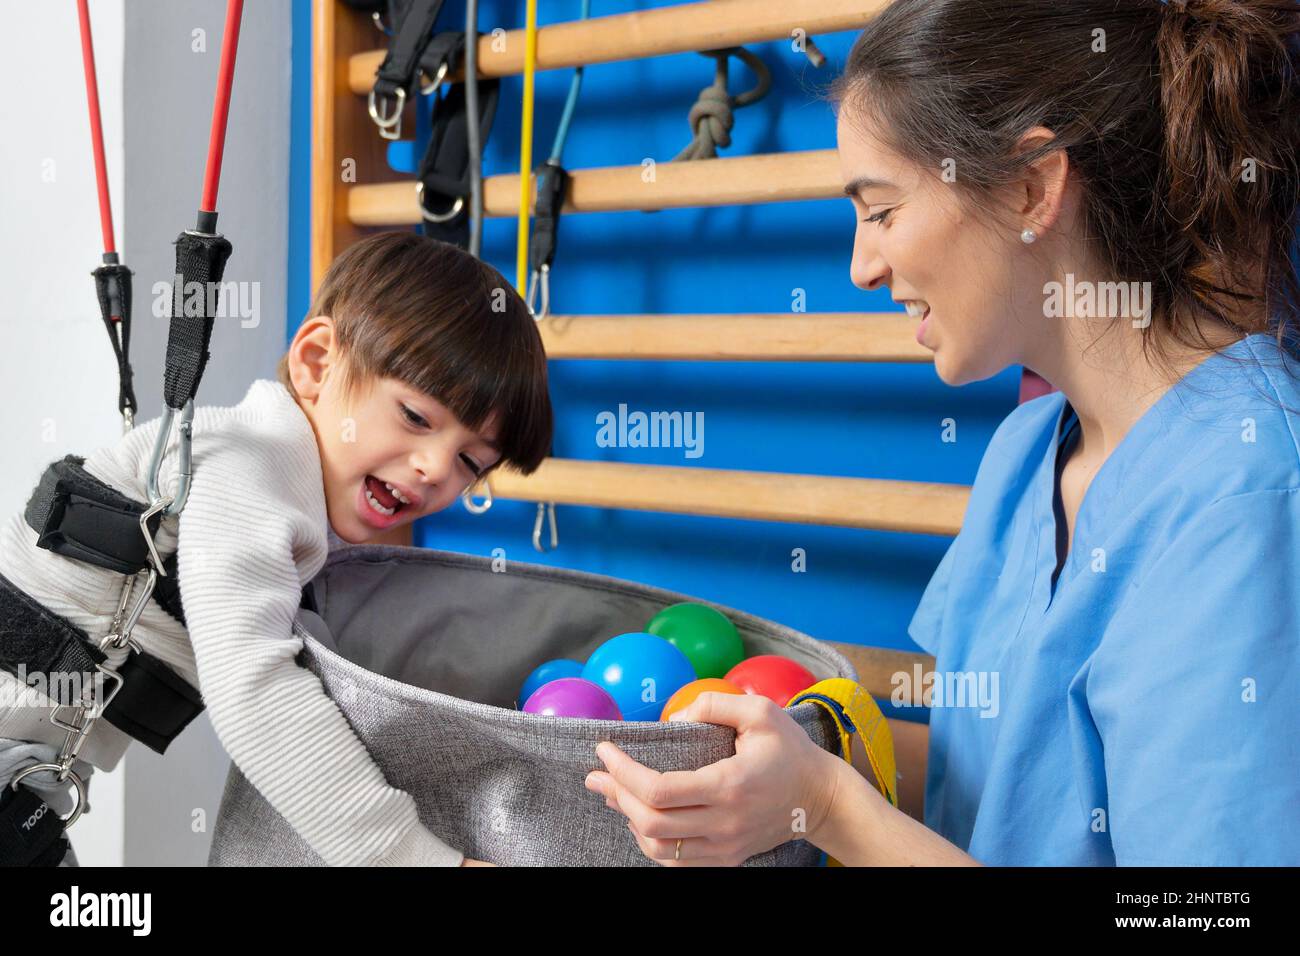 L'enfant handicapé joue, apprend et fait de l'exercice dans un hôpital de thérapie de réadaptation, le mode de vie d'un enfant handicapé. Concept enfant heureux et handicapé. Banque D'Images